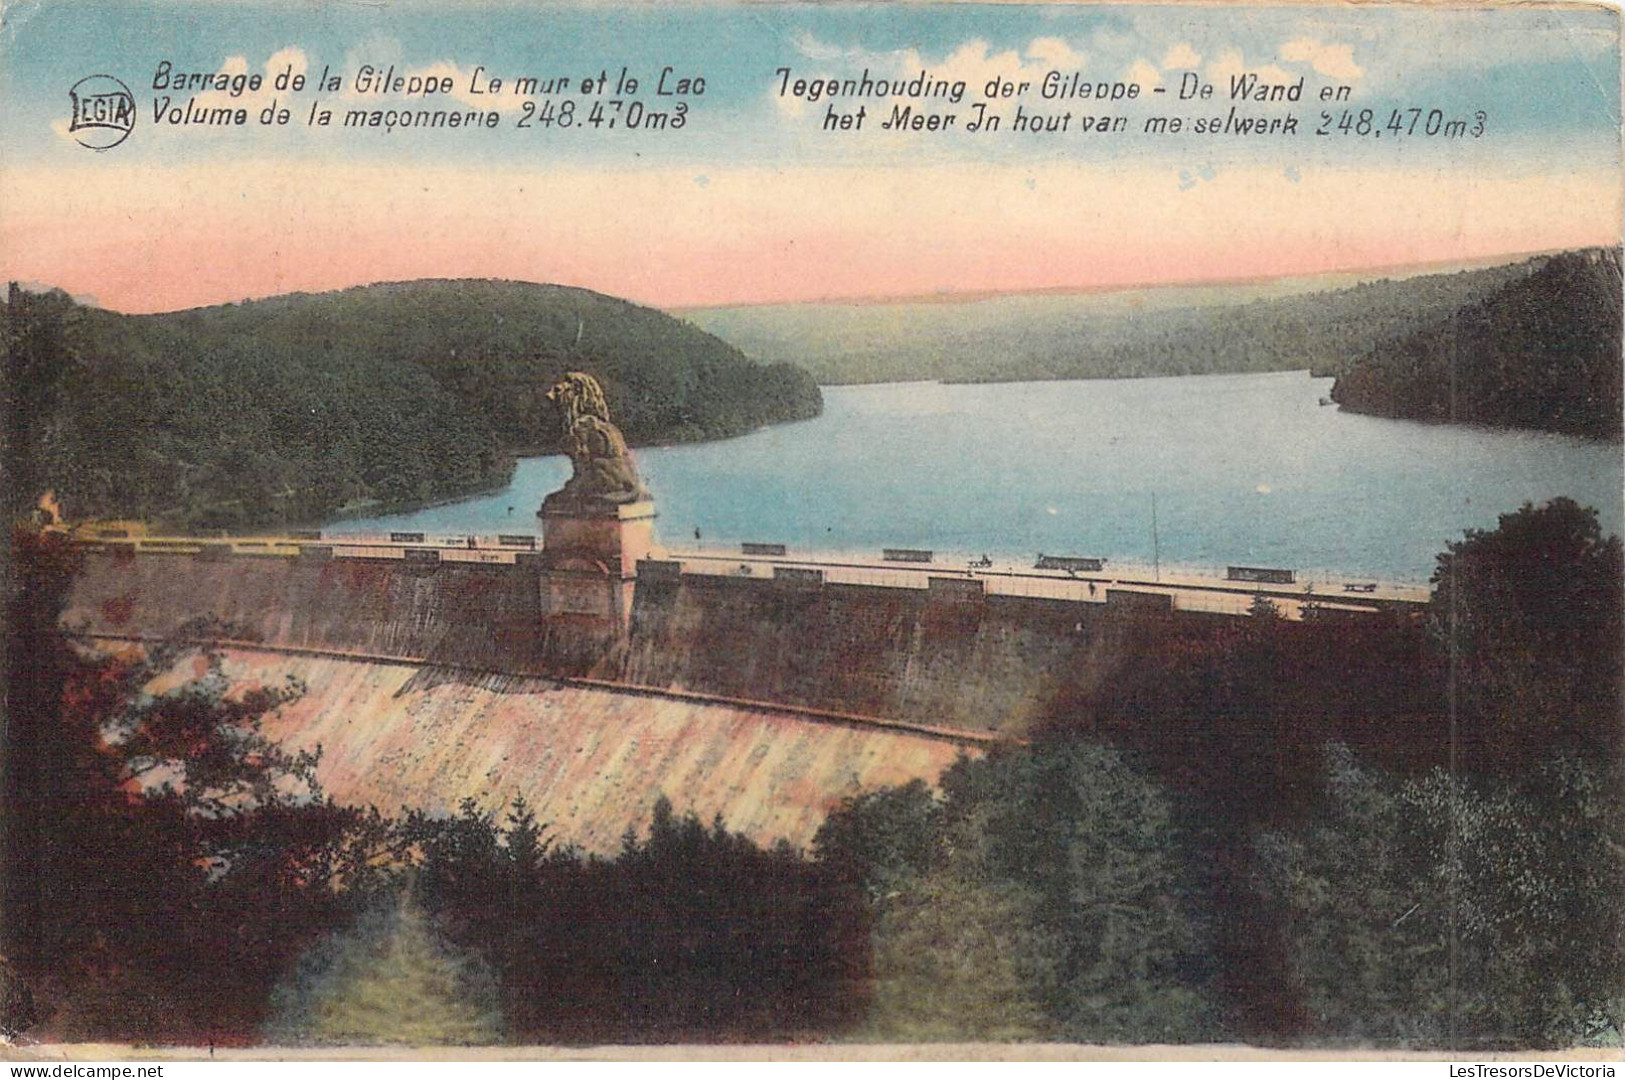 BELGIQUE - GILEPPE - Barrage De La Gileppe Le Mur Et Le Lac - Volume De La Maconnerie 248 470 M - Carte Postale Ancienne - Gileppe (Stuwdam)